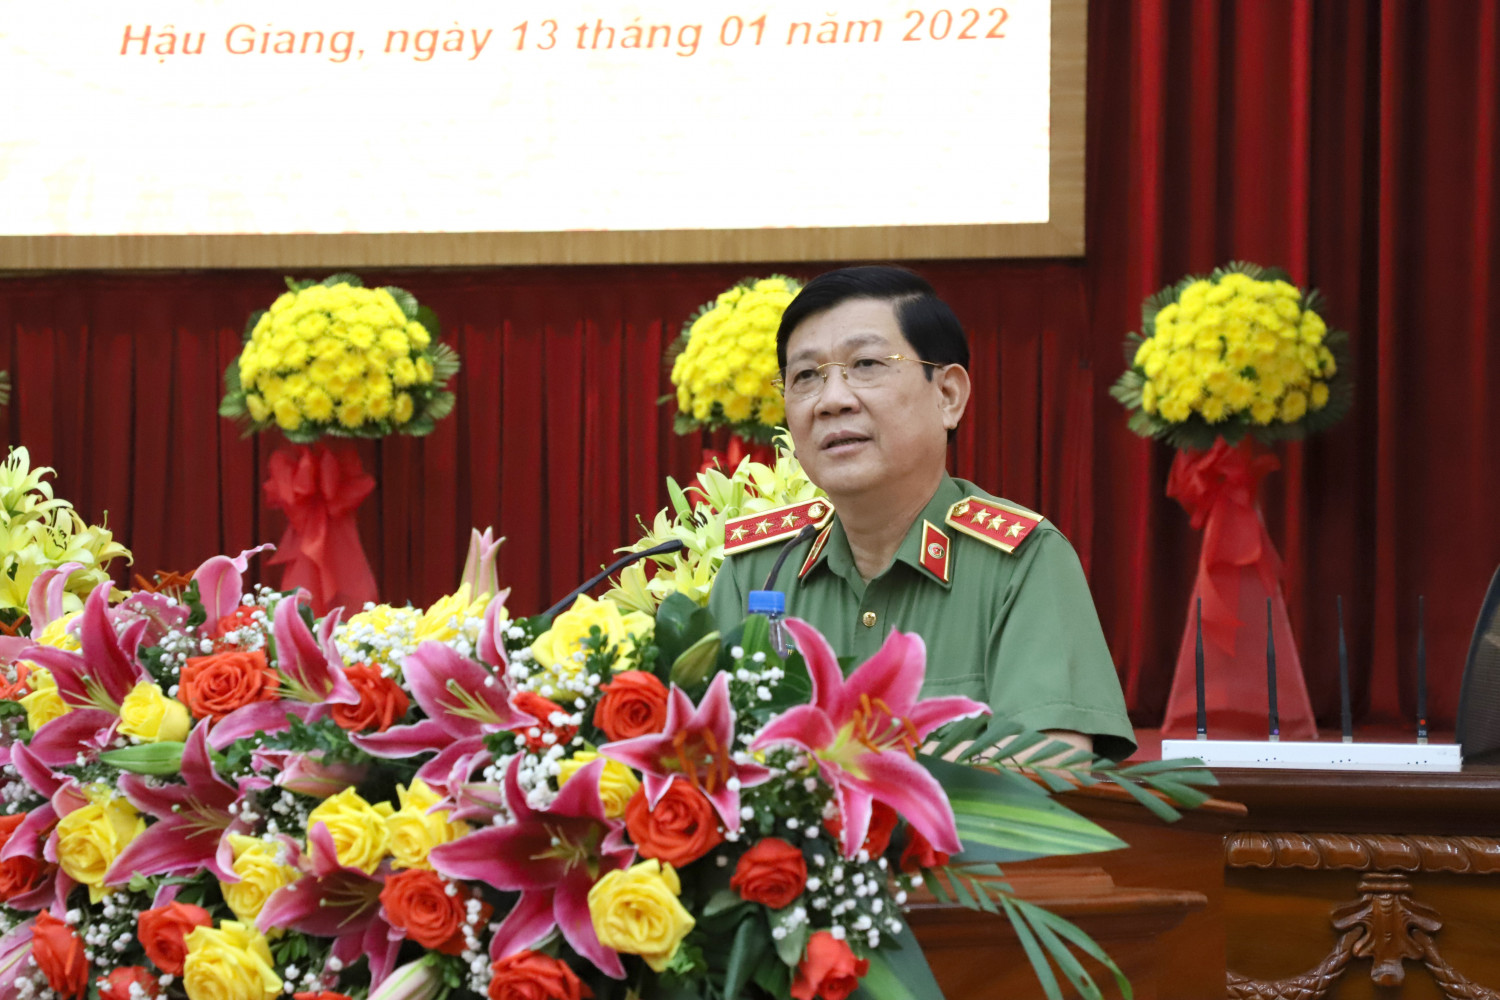 Đồng chí Thượng tướng Nguyễn Văn Sơn, Ủy viên Ban Thường vụ Đảng ủy Công an Trung ương, Thứ trưởng Bộ Công an phát biểu chỉ đạo Hội nghị